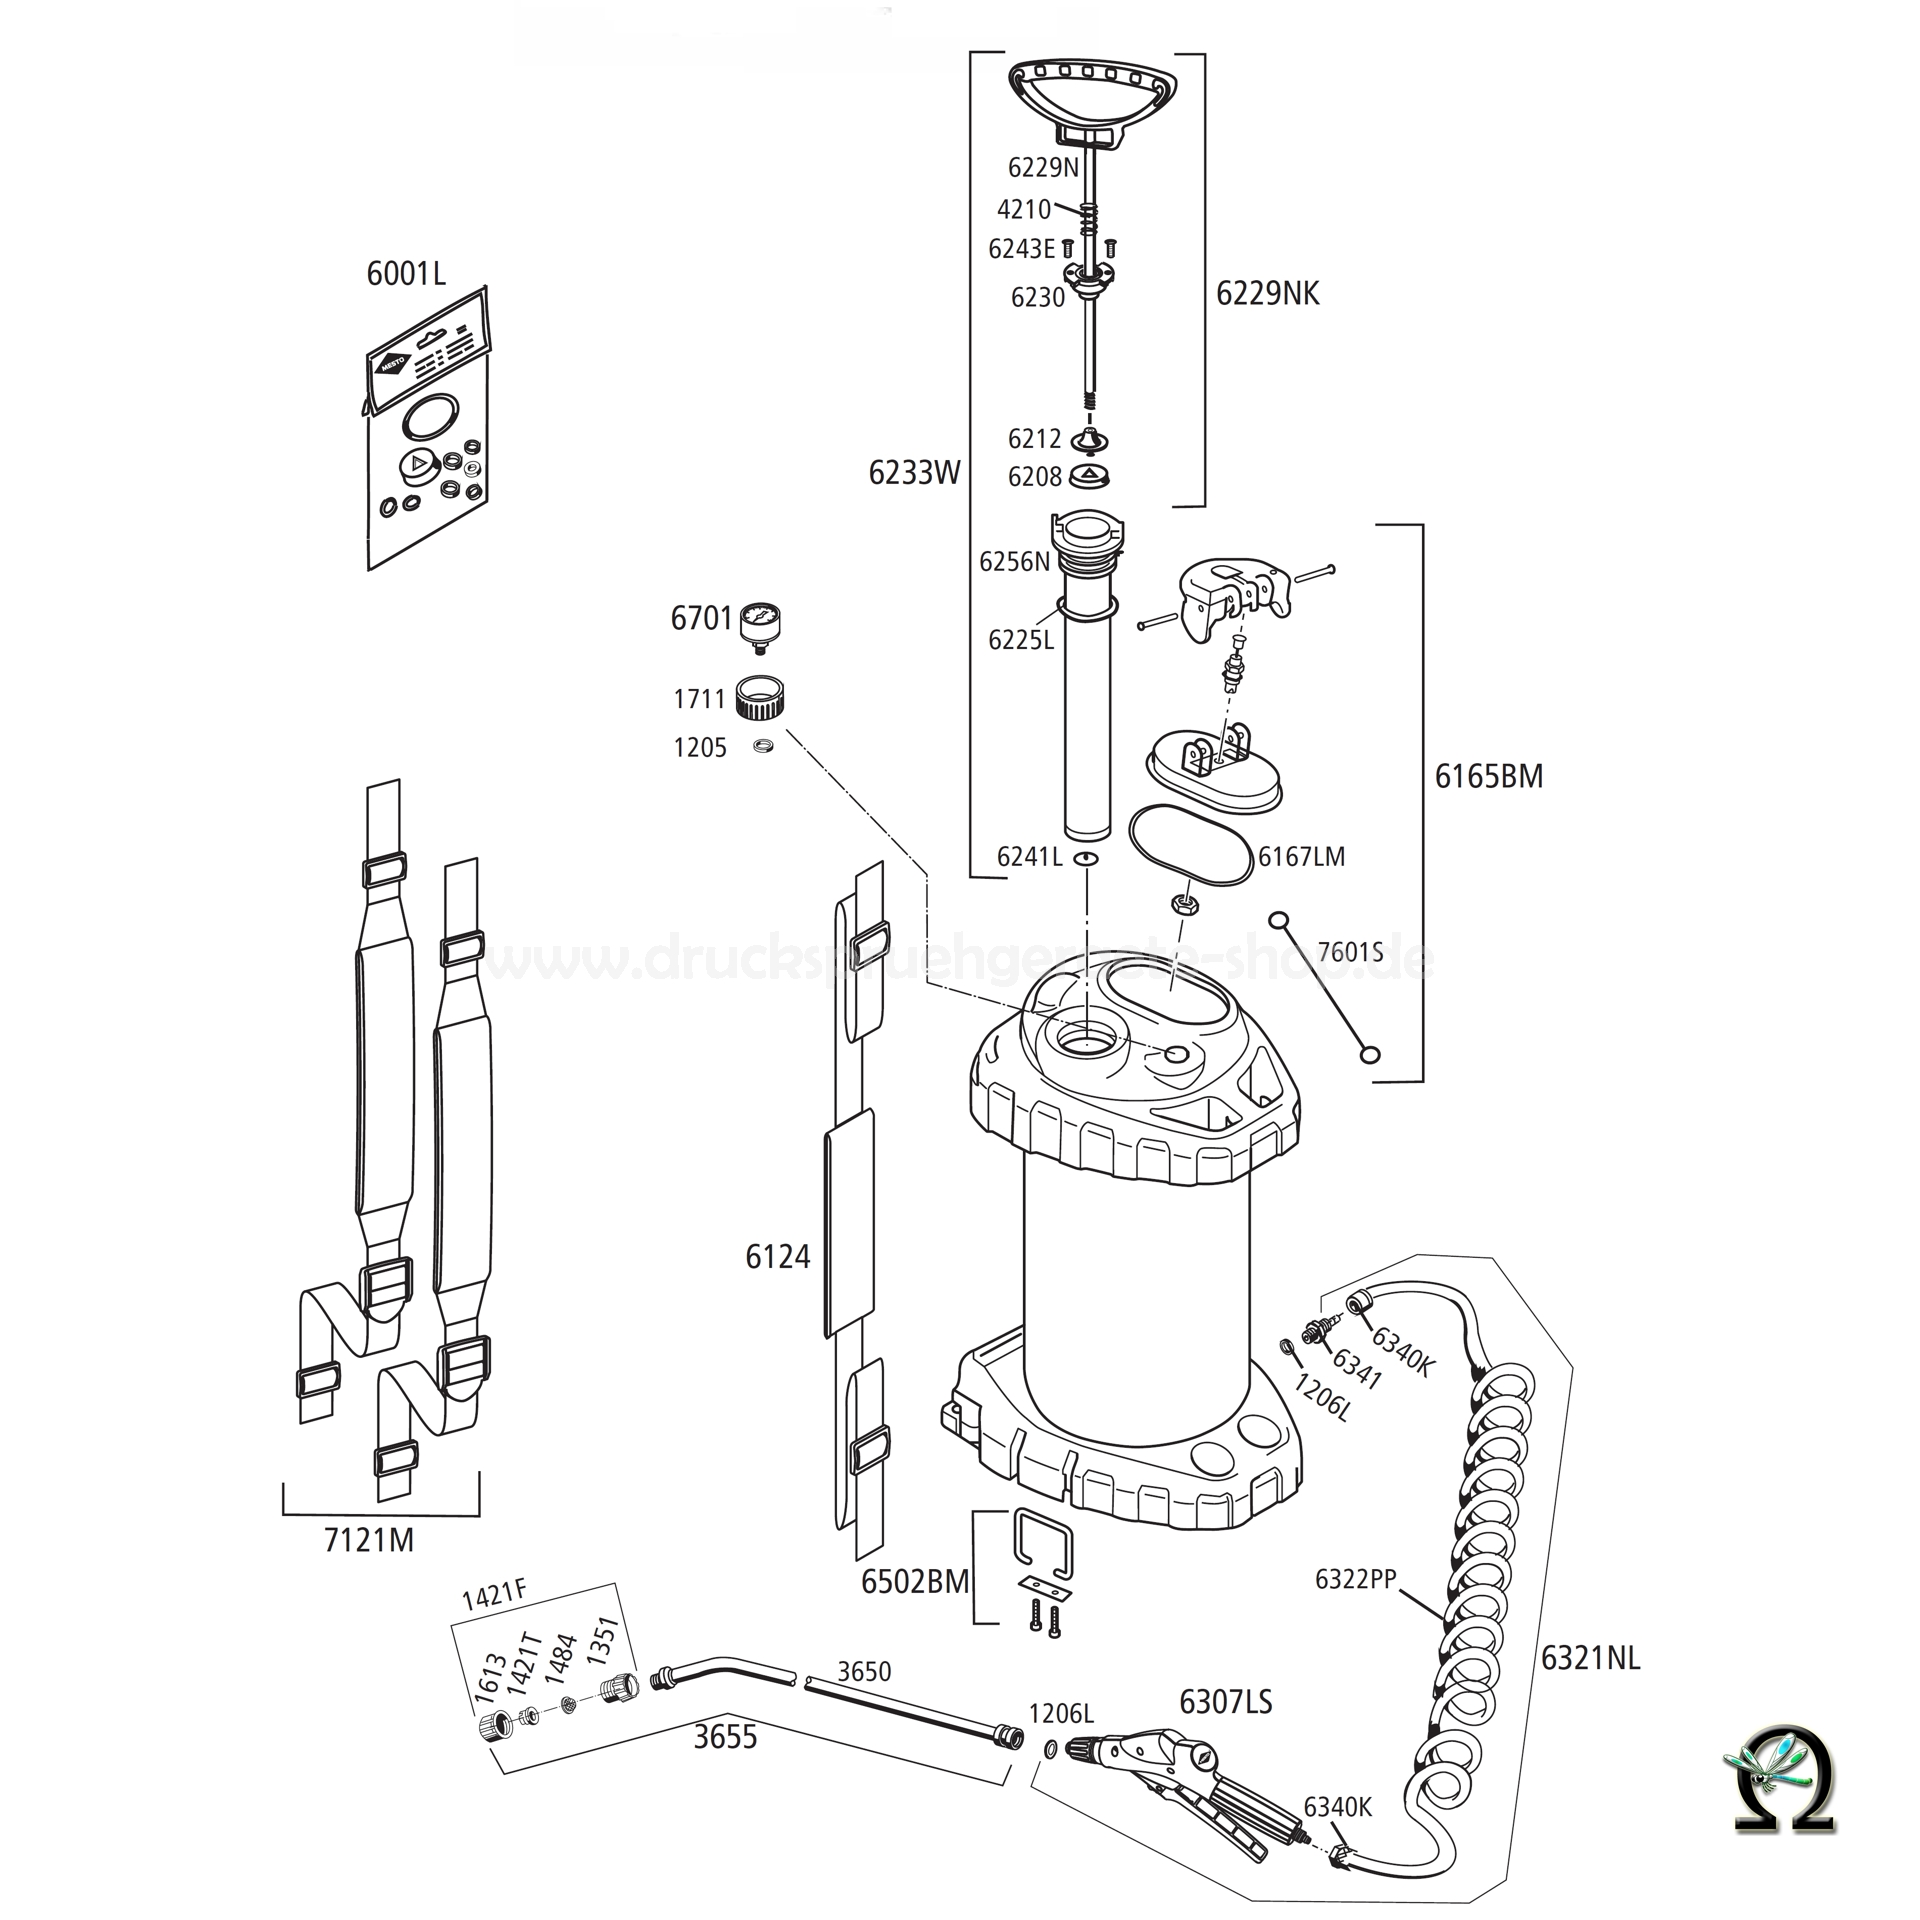 MESTO Edelstahl-Hochdrucksprühgerät 3618P mit FPM-Dichtungen - 10 Liter, Zeichnung der Einzelteile